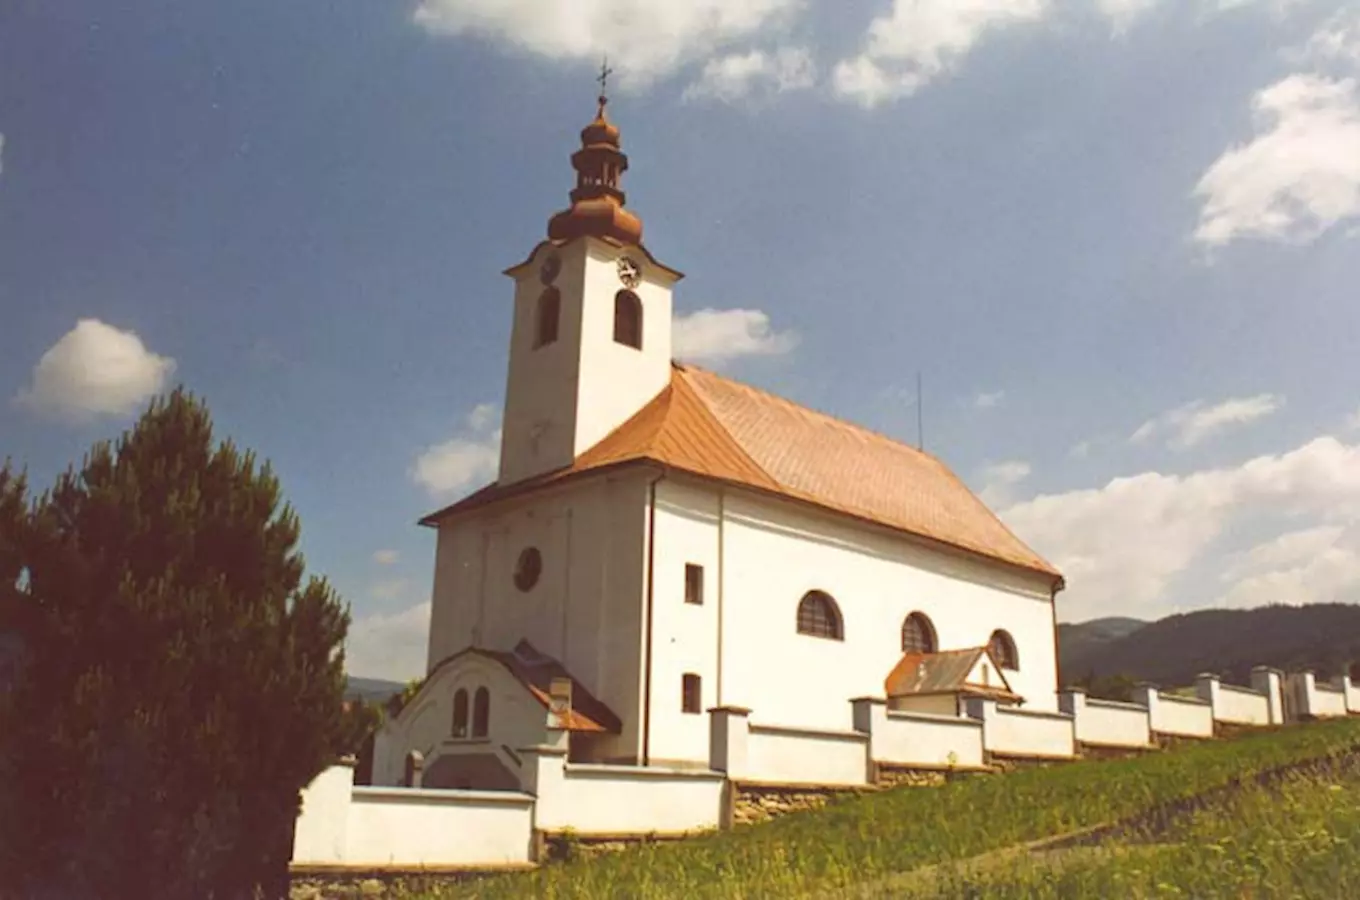 Kostel sv. Aloise v Dolní Moravě